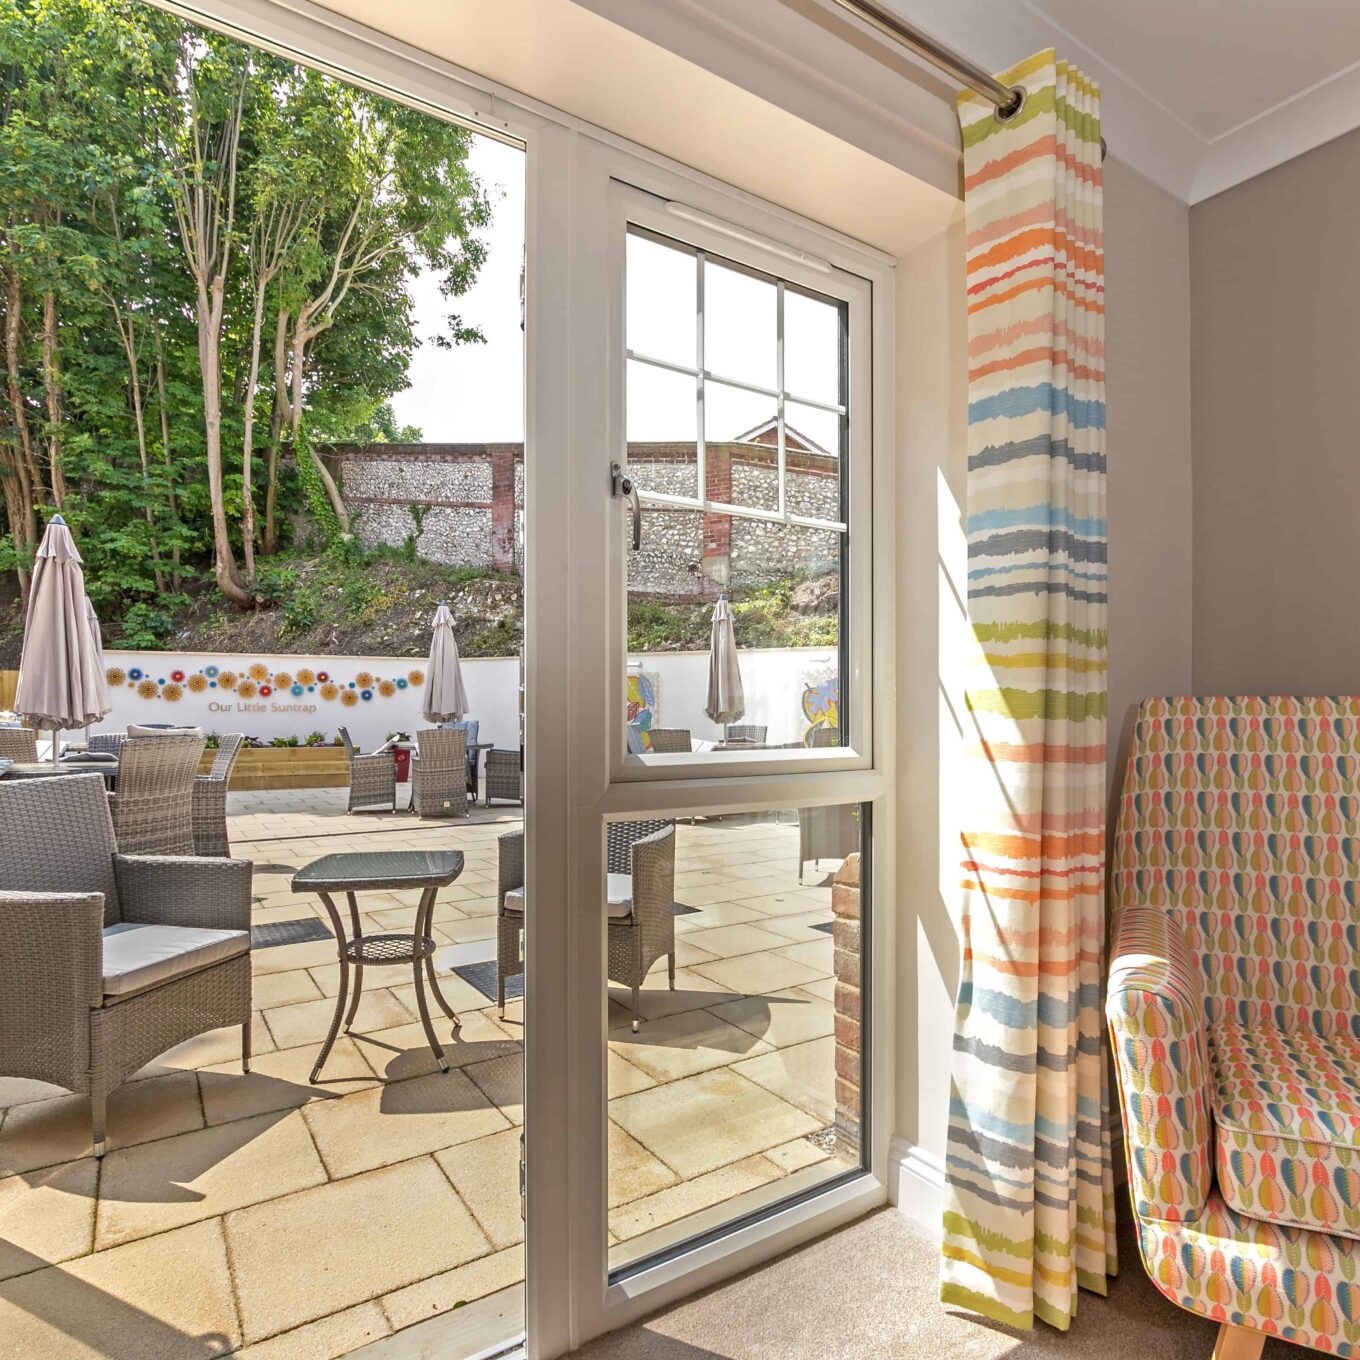 Open door looking onto garden patio at Beechwood Grove Care Home in Eastbourne